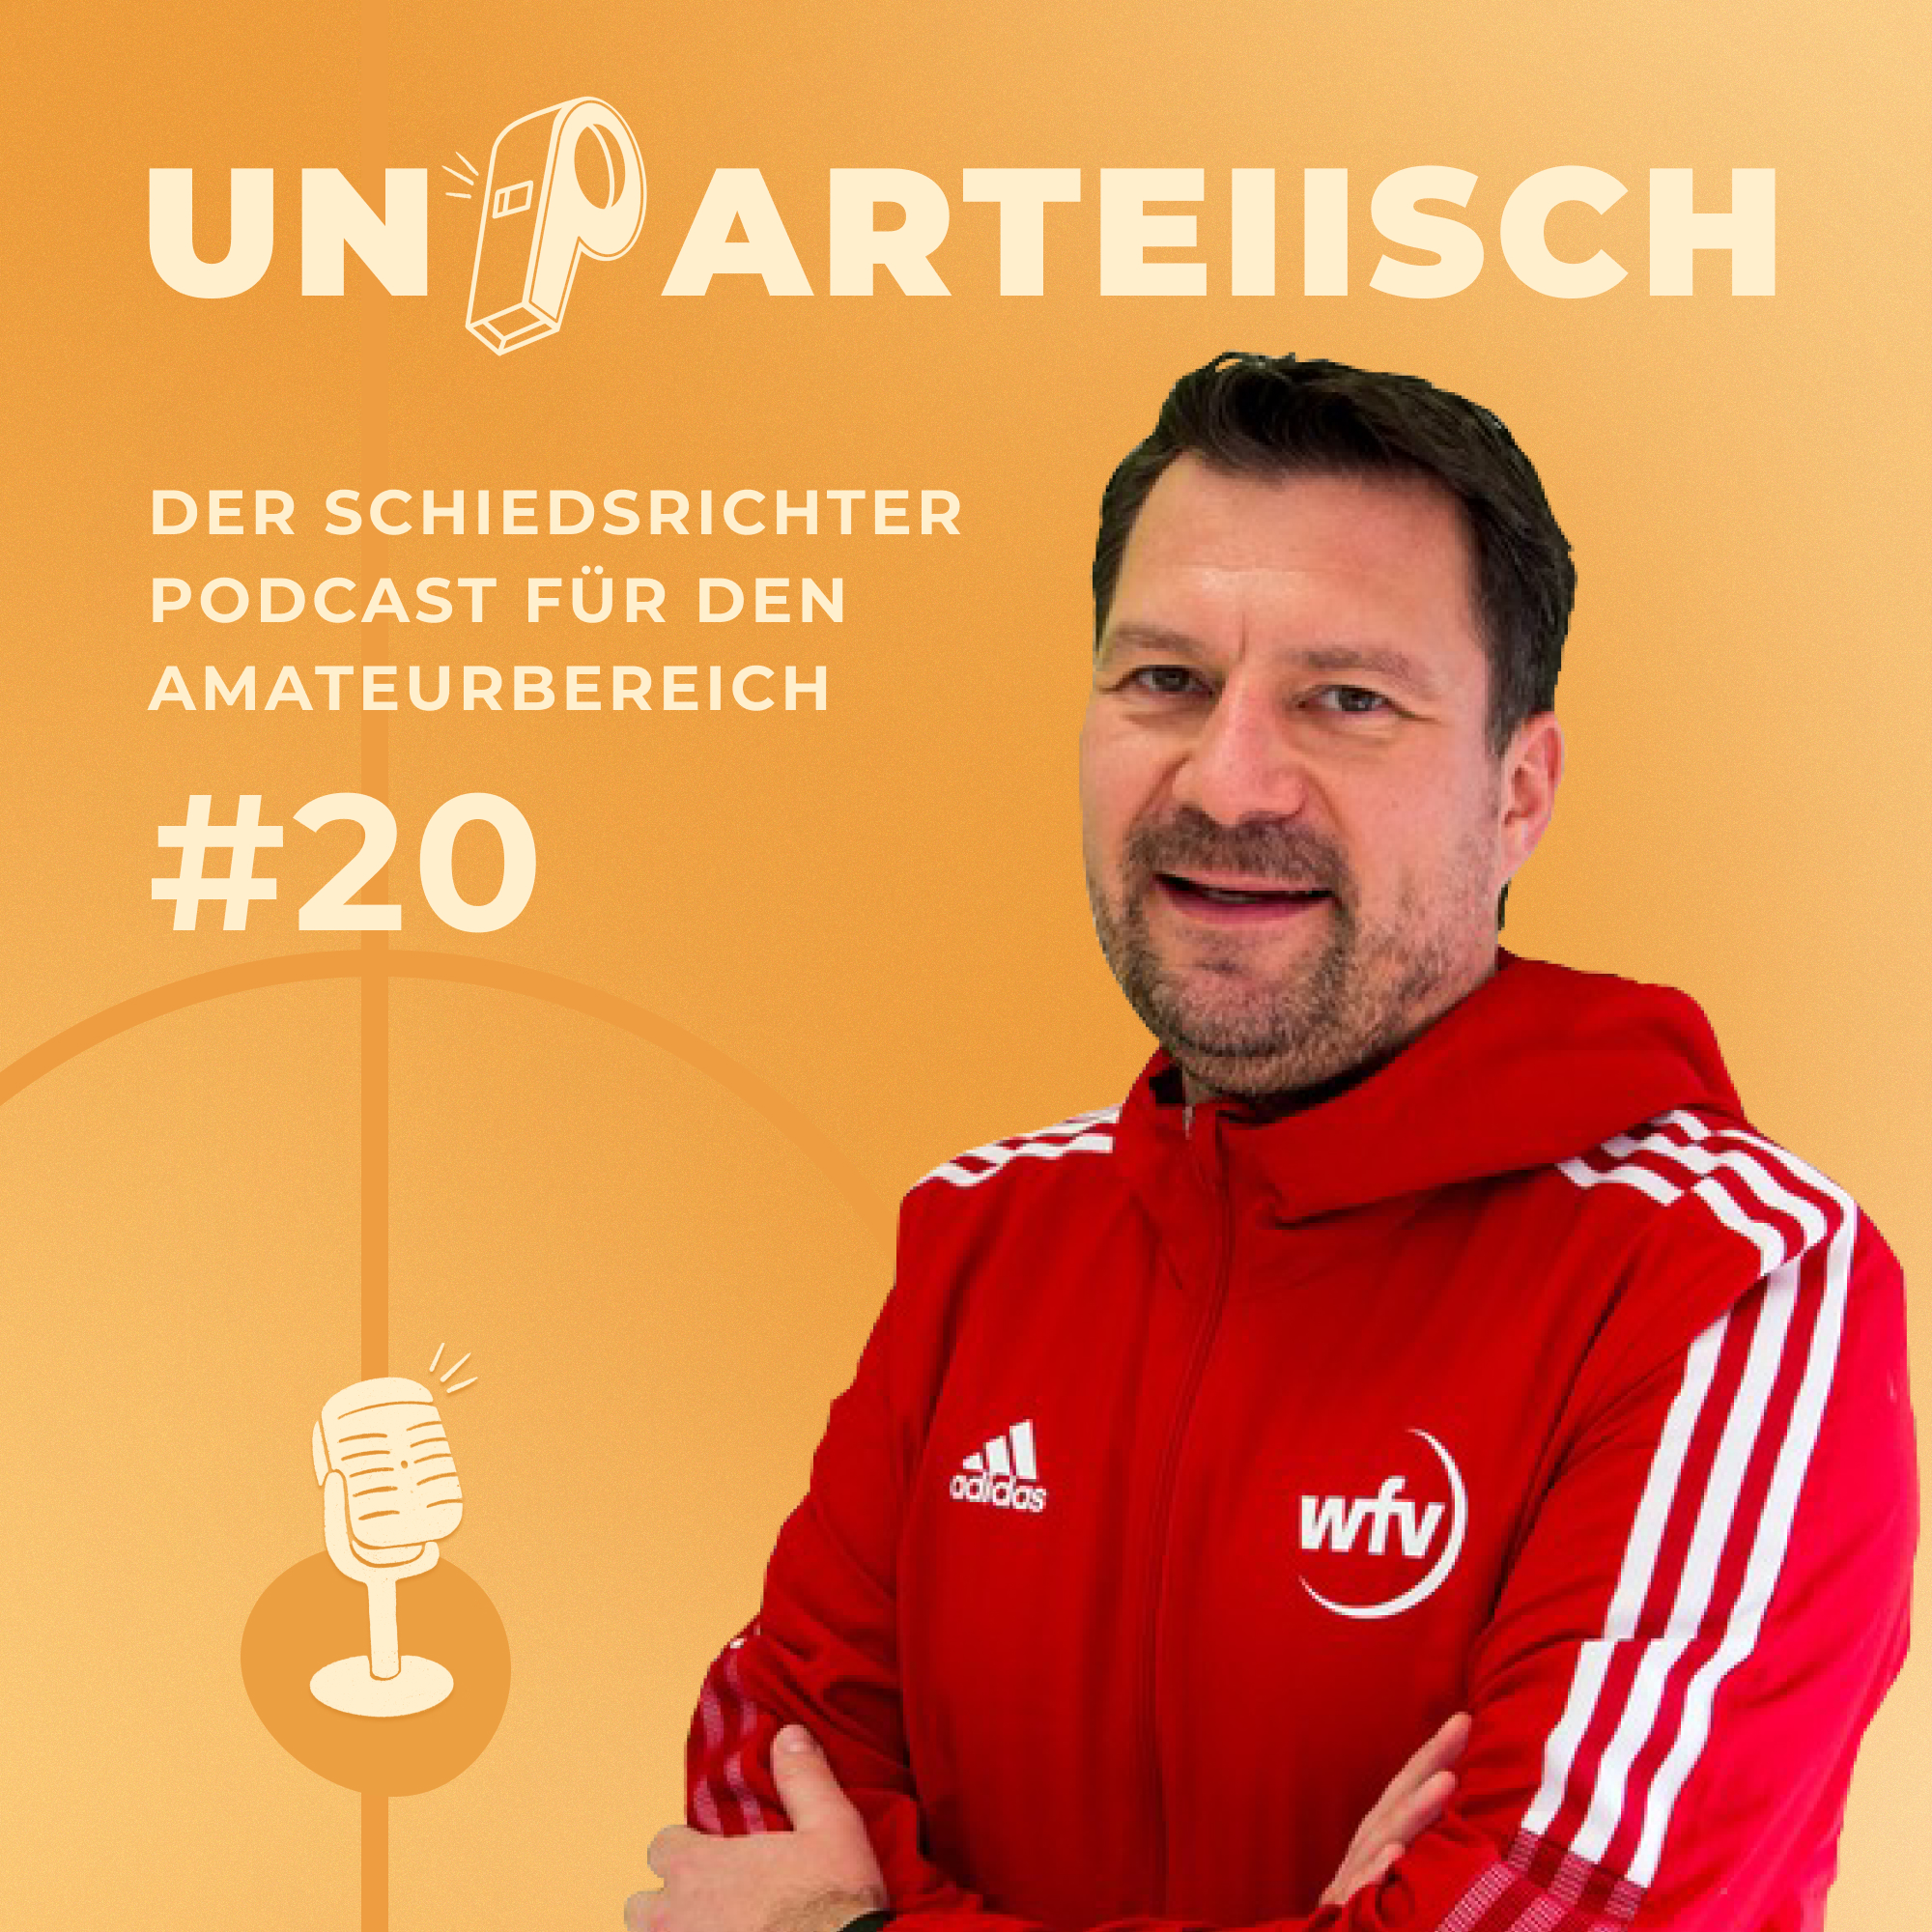 #20 DFB-Stopp-Konzept unter der Lupe: Was bringt es wirklich? – Interview mit Uwe Hamel